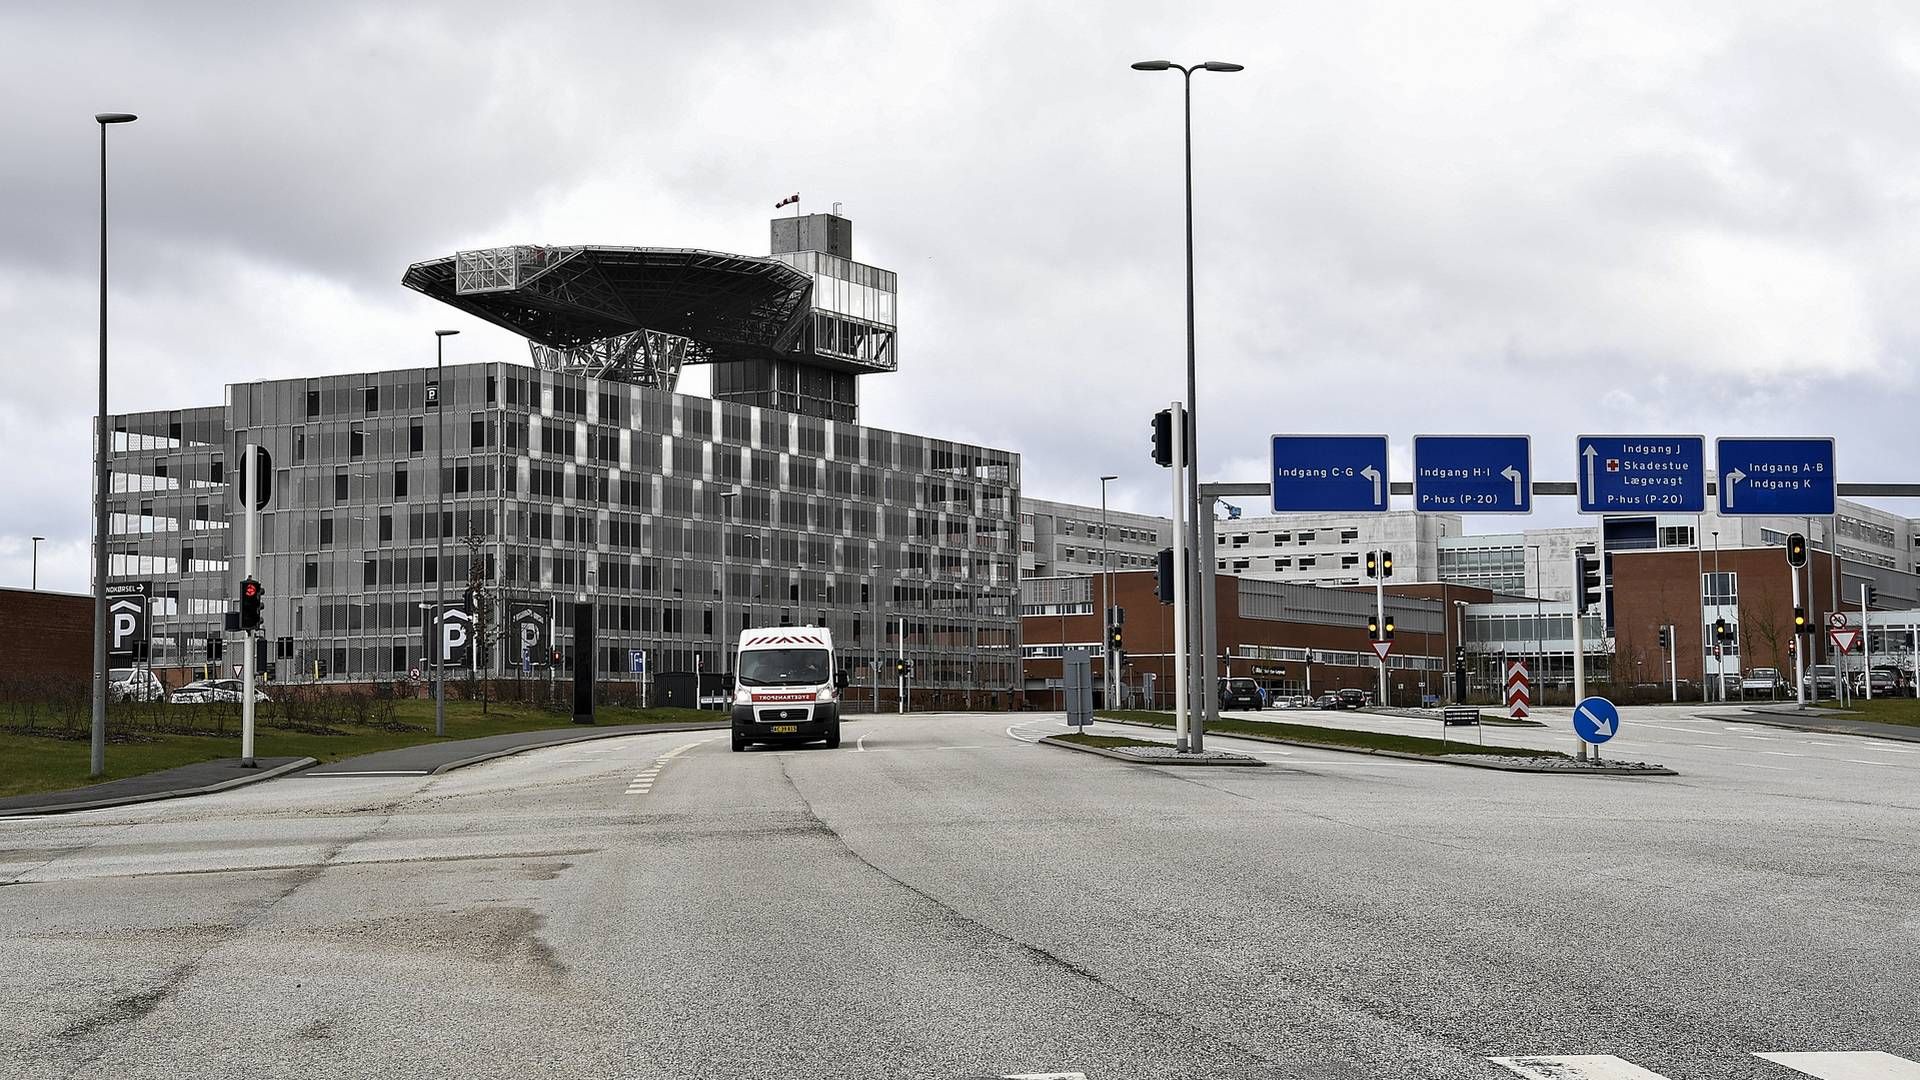 Koppevaccinerne vil blive bragt til Aarhus Universitetshospital (billedet) og Hvidovre Hospital, hvor de skal gives efter vurdering af en speciallæge. | Foto: Ernst van Norde